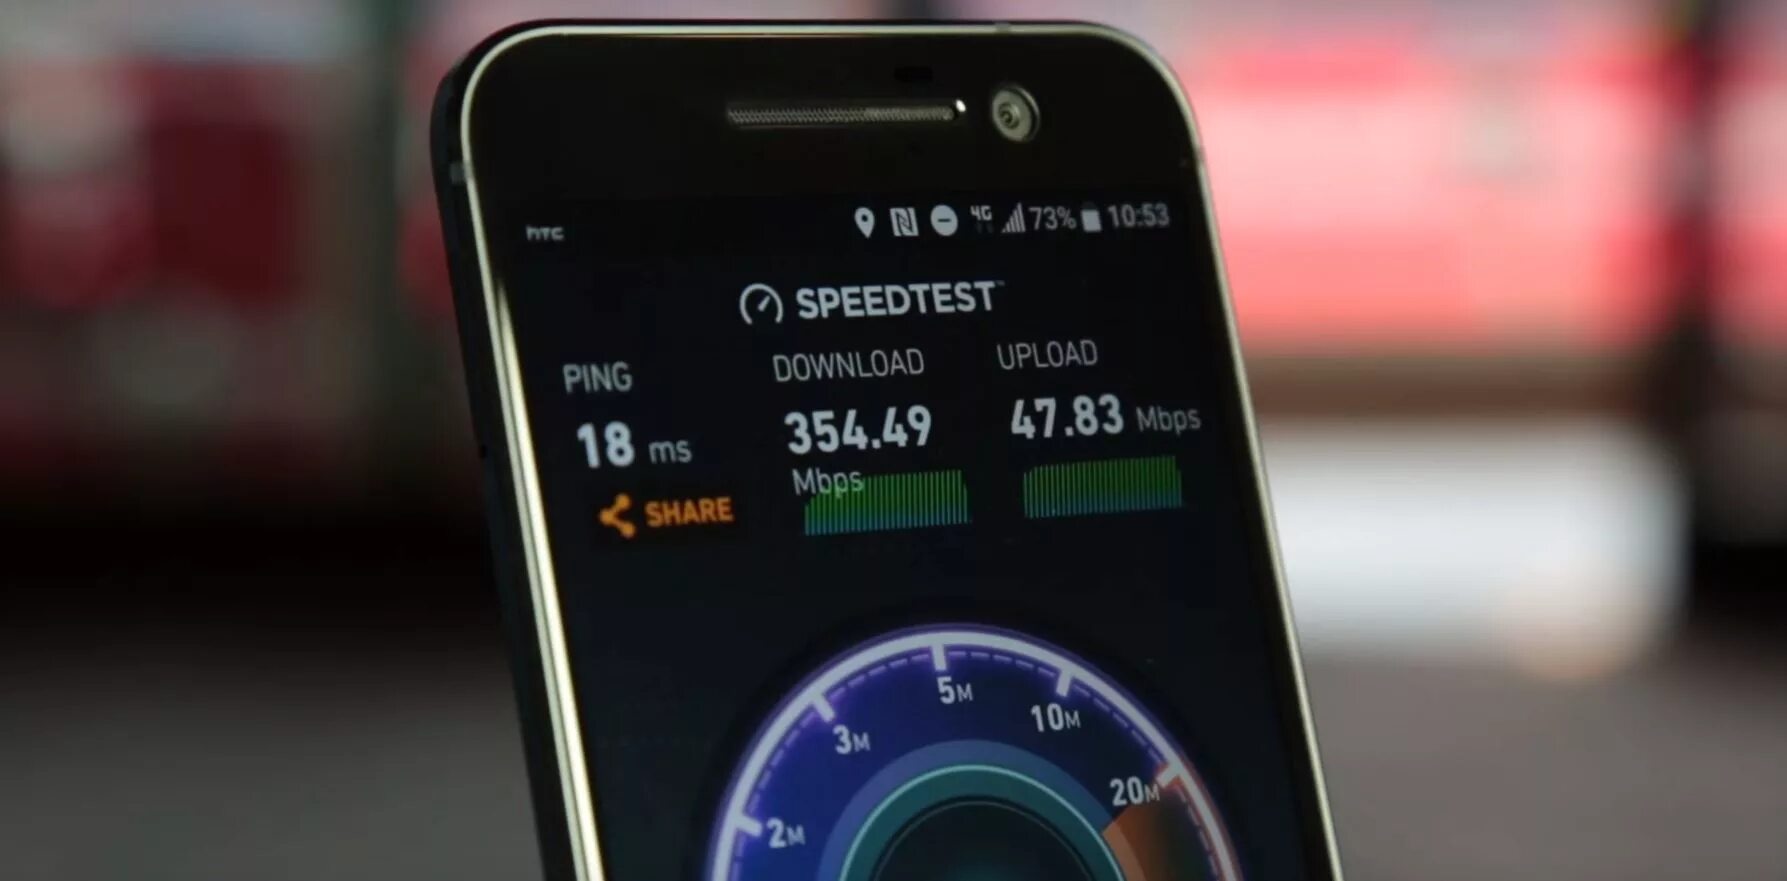 Хороший интернет 4g. Mobile 4g/5g модем. Скоростной мобильный интернет. Режим 4g+. Частный дом Speedtest.